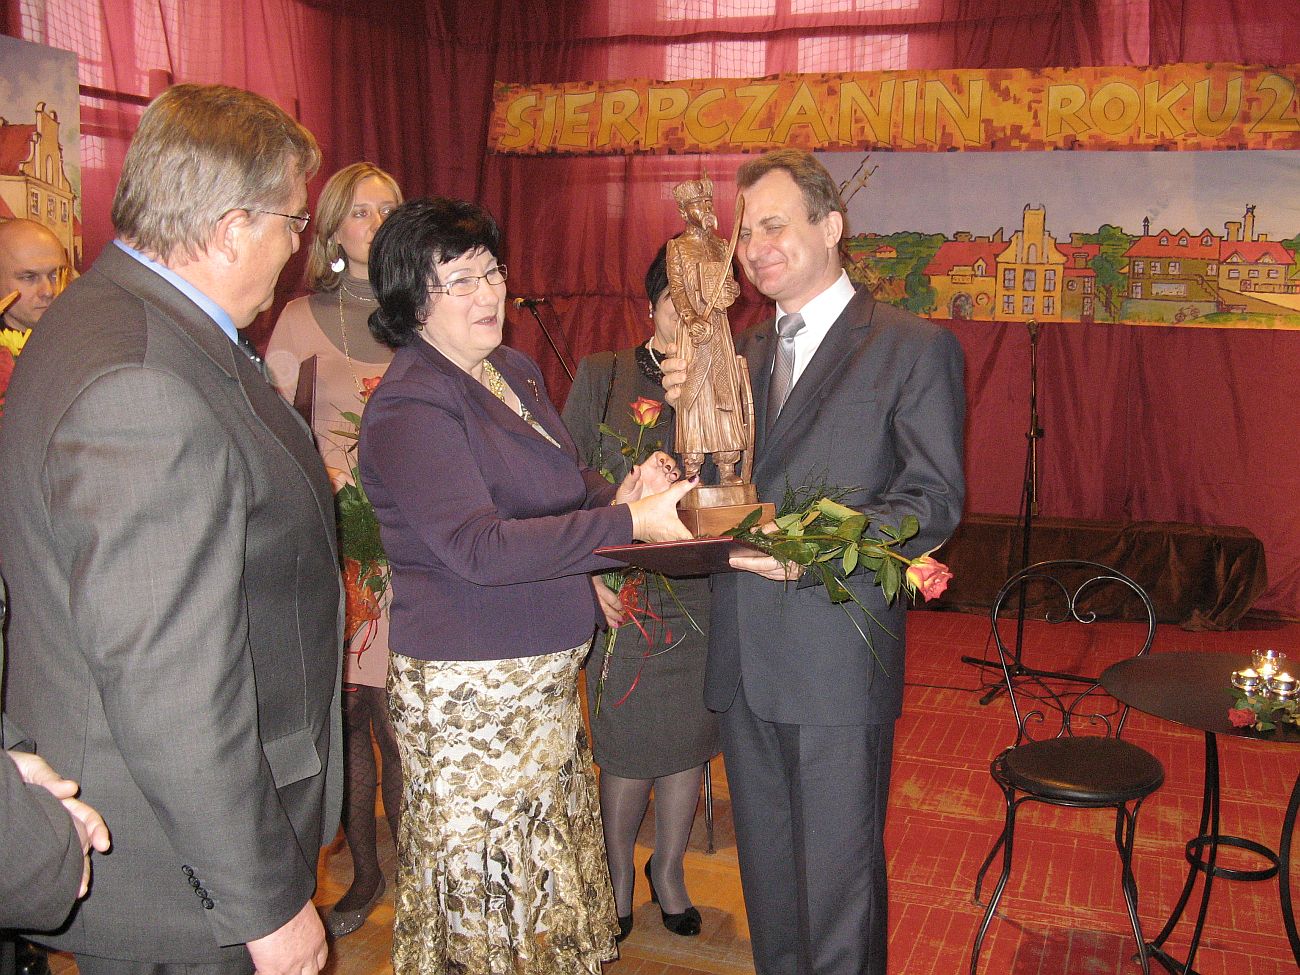 I wszystko wiadomo - Sierpczaninem Roku 2010 zostaje Józef Urbański. Pamiątkową rzeźbę otrzymuje z rąk dr Henryki Piekarskiej i burmistrza Marka Kośmidra.